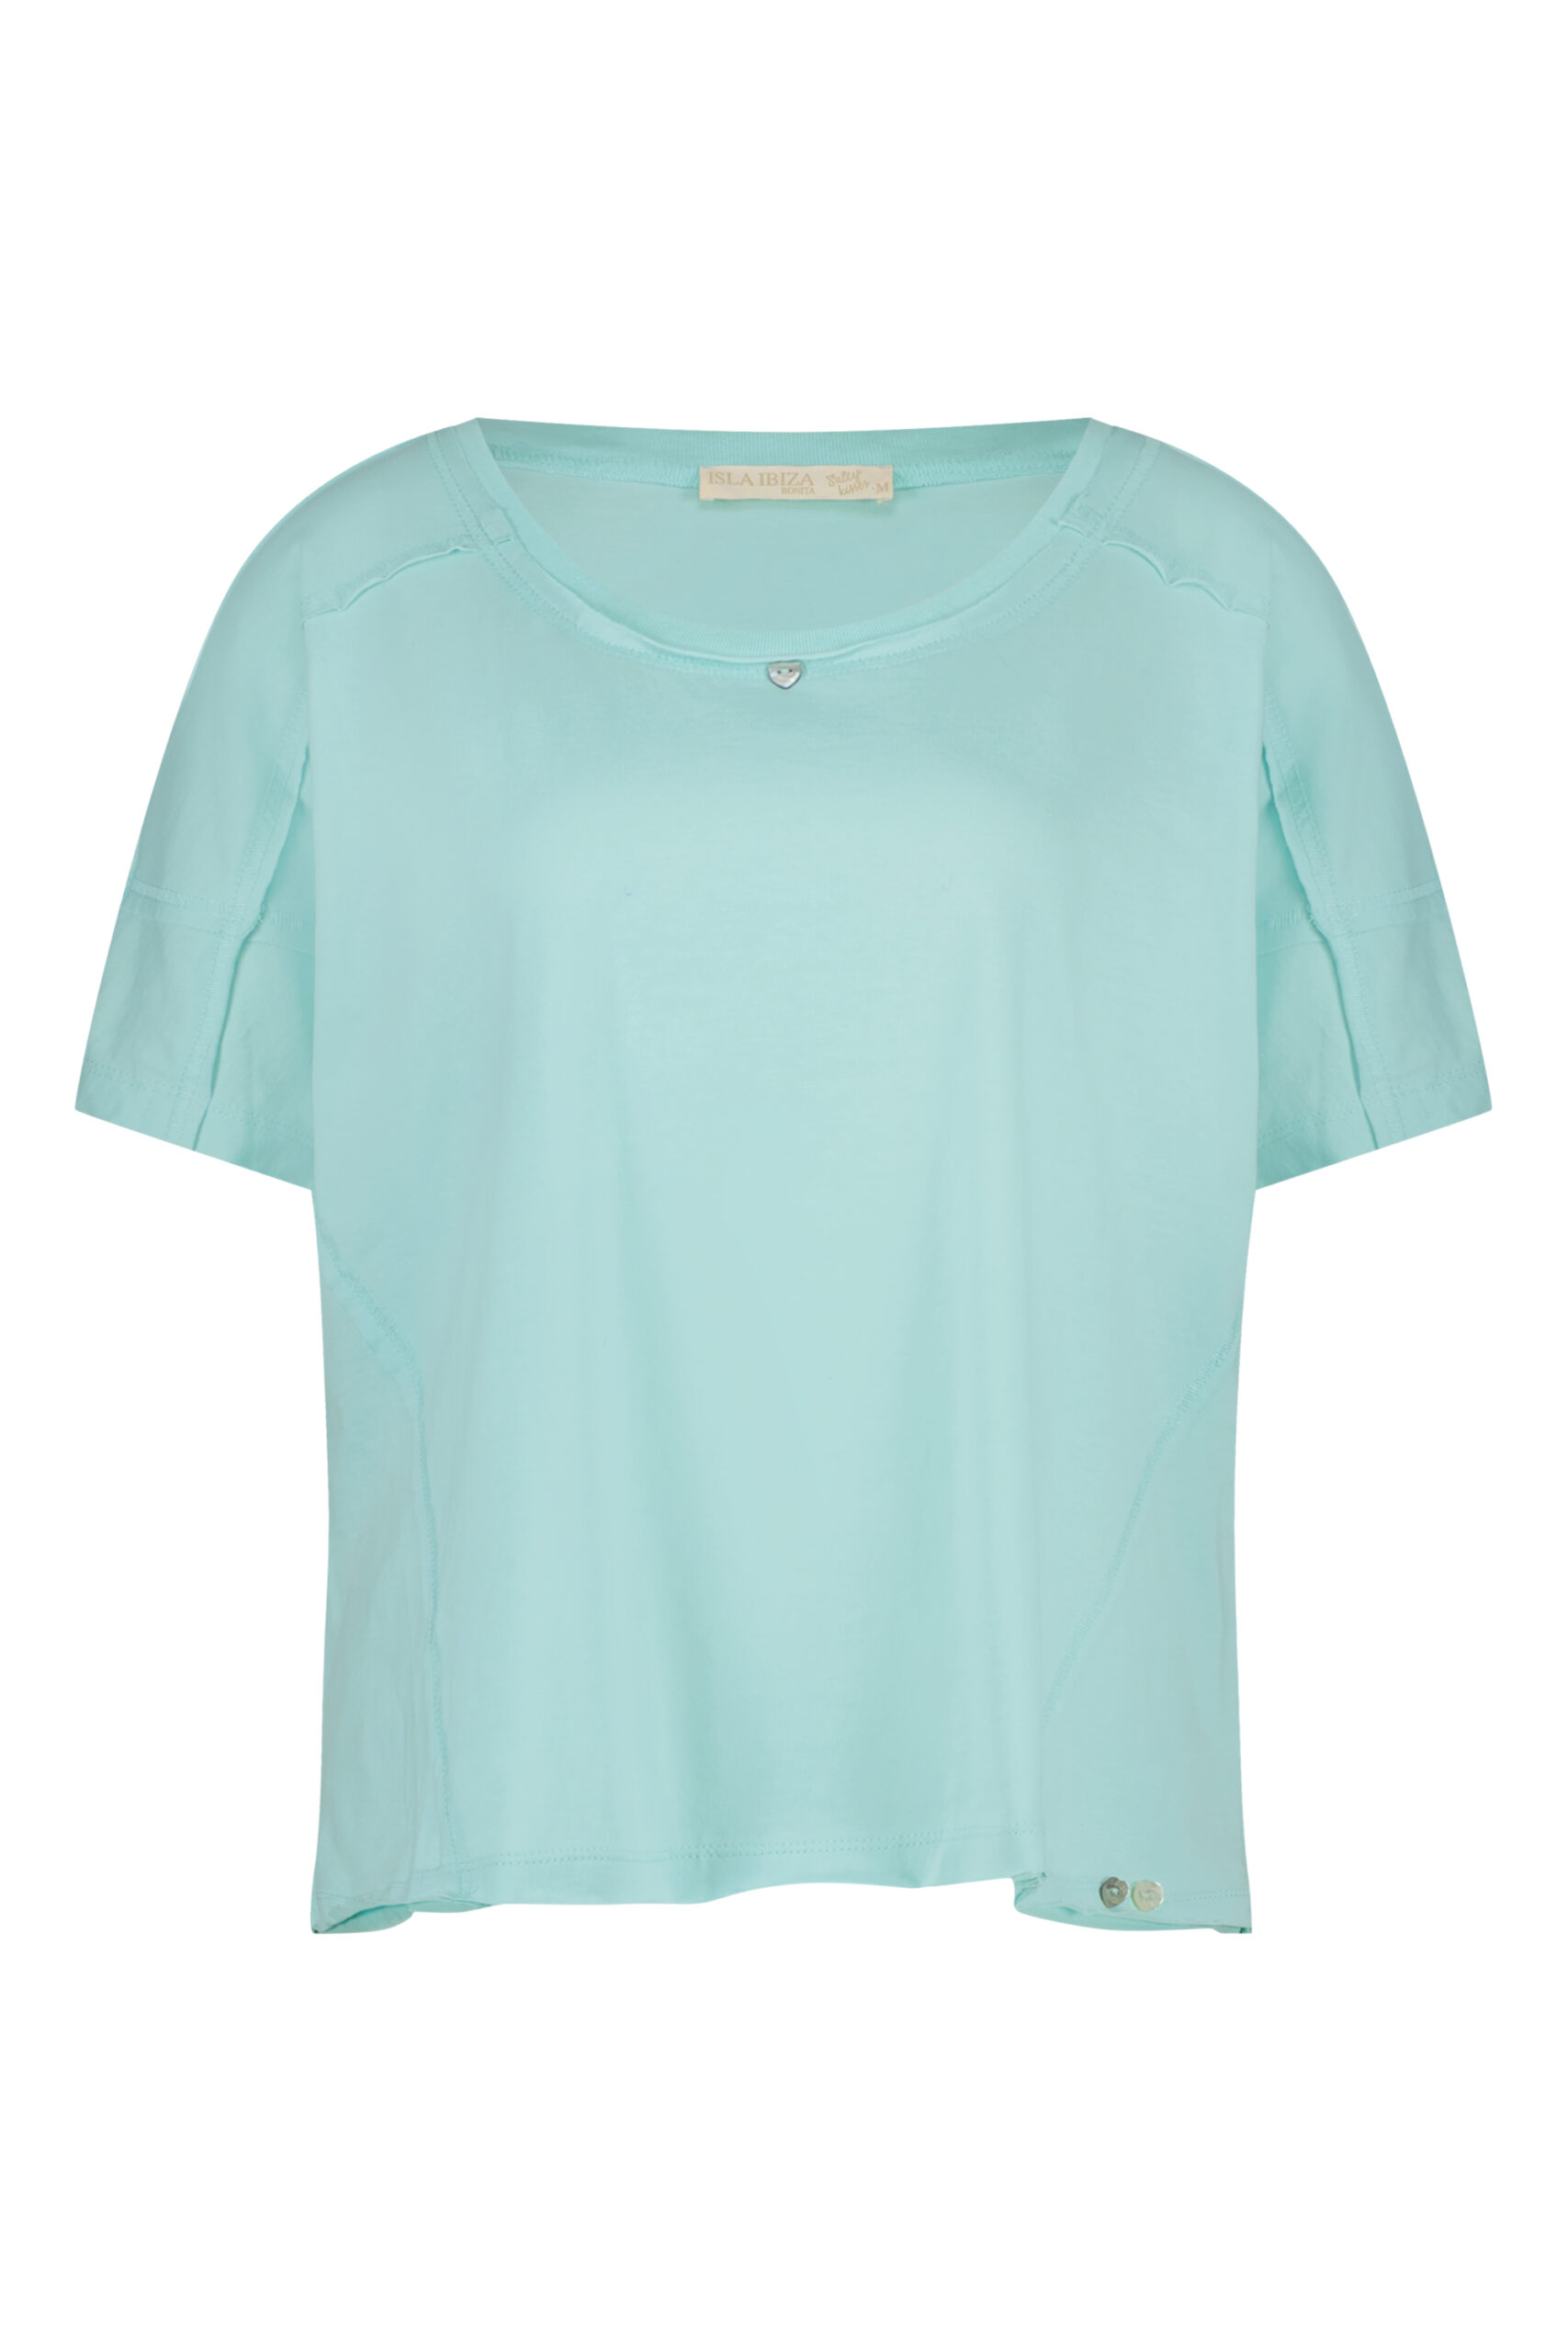 Basic Baggy Short Sleeve T-Shirt – Turquoise – Isla Ibiza Bonita